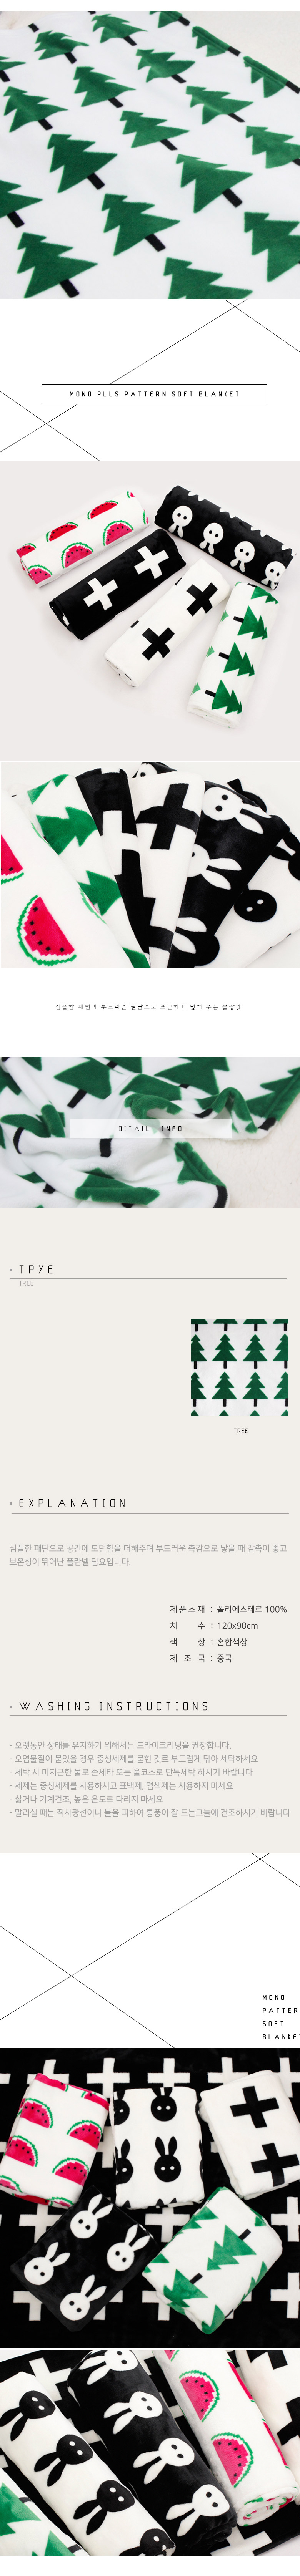 tree_pattern_blanket.jpg